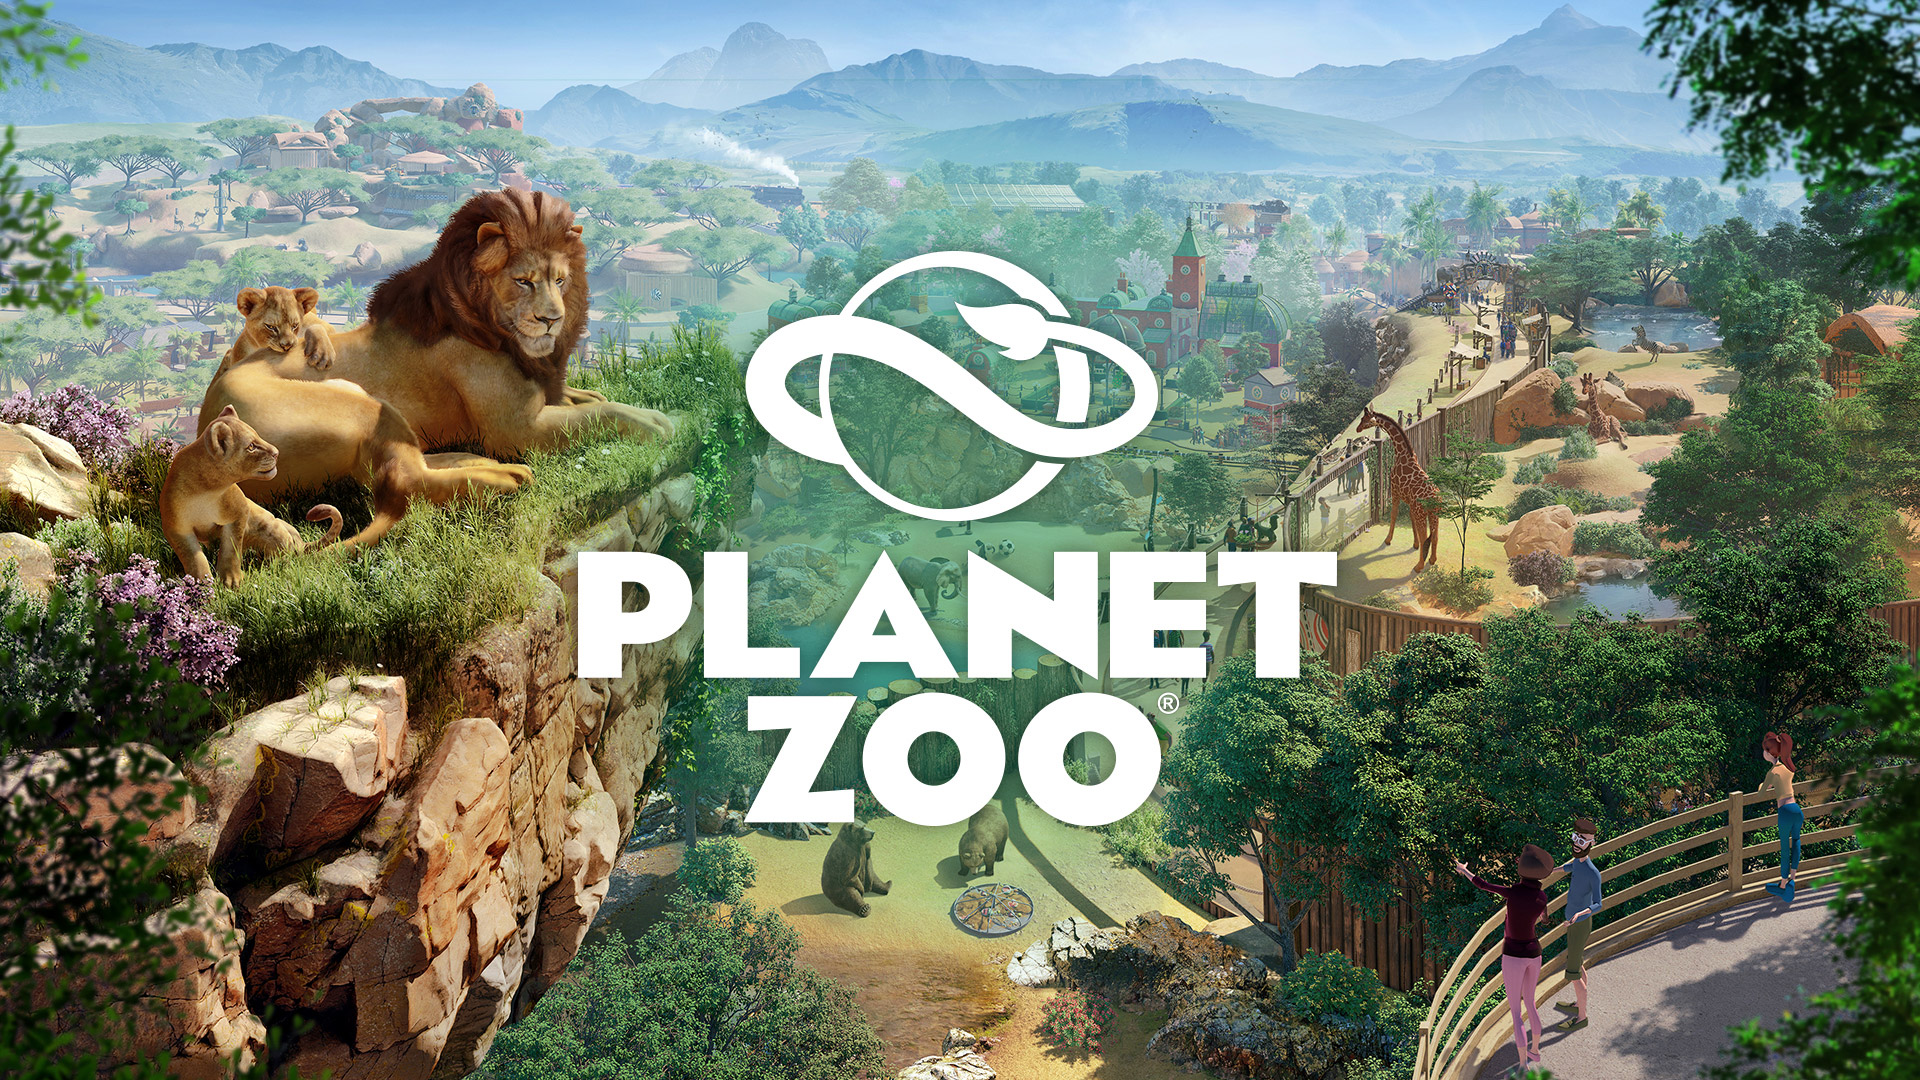 Descargar fondos de escritorio de Planet Zoo HD